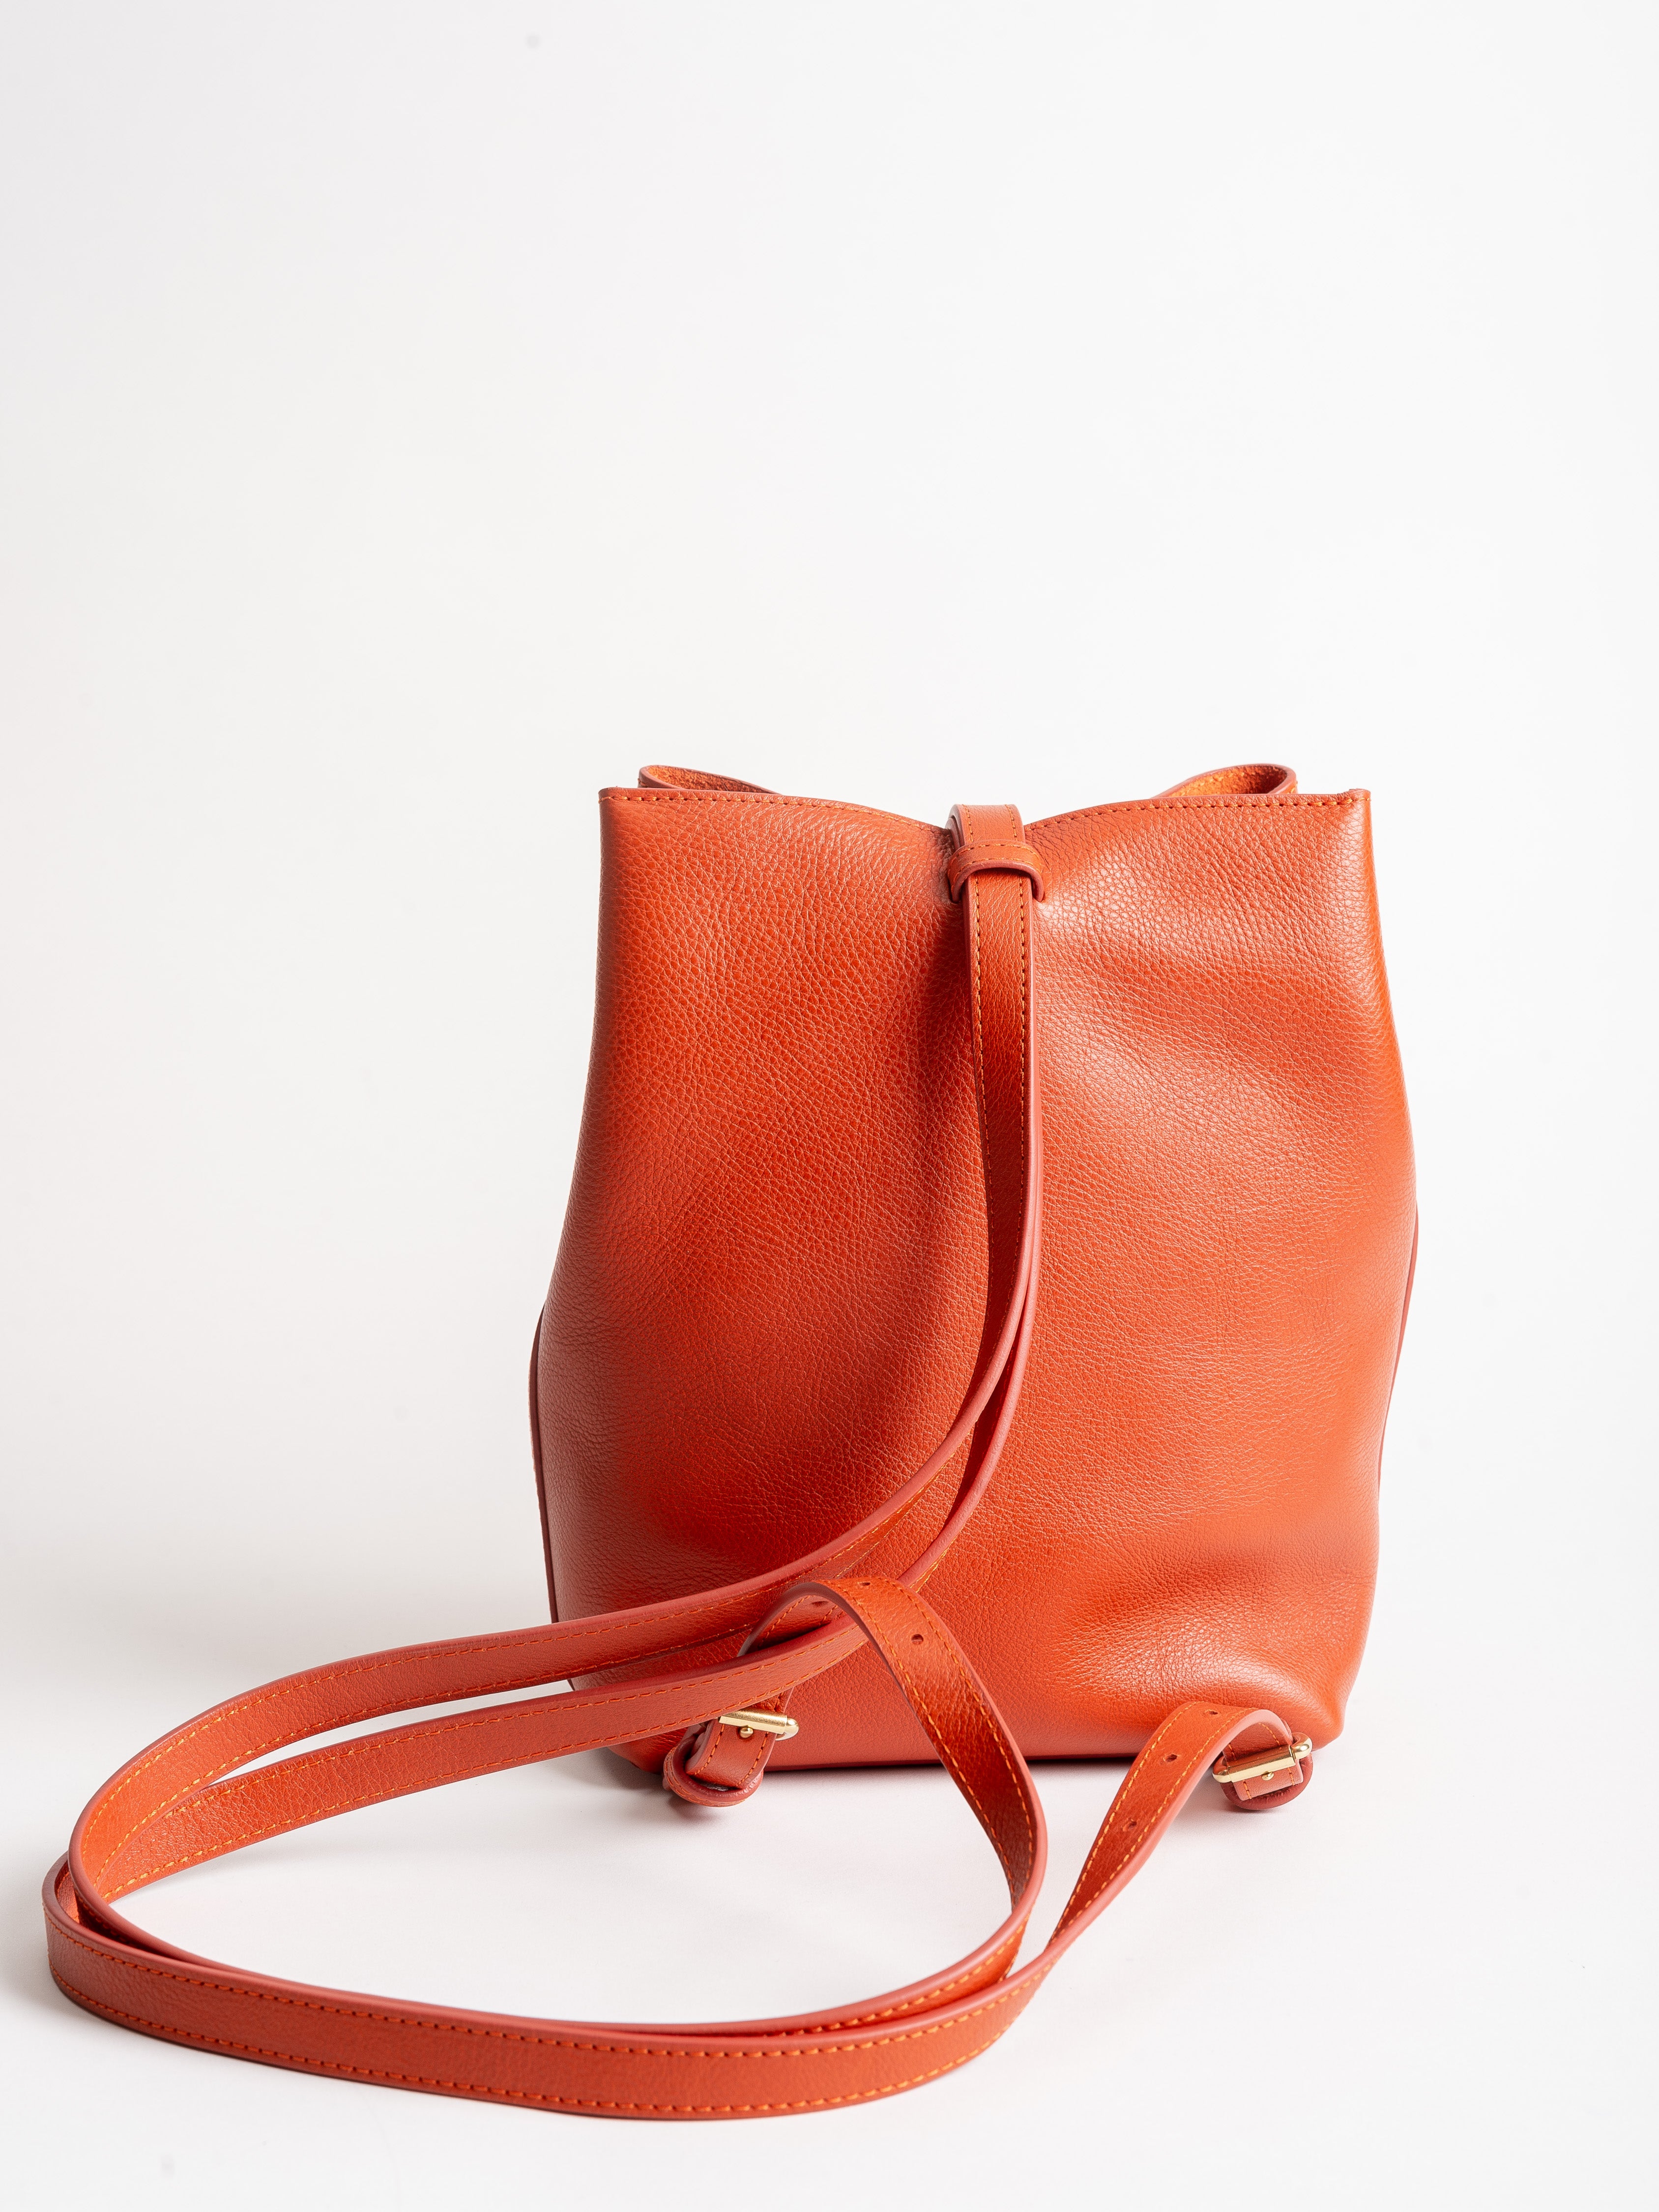 The Mini Sling Backpack -Handmade Leather Backpack and Mini Bucket Bag